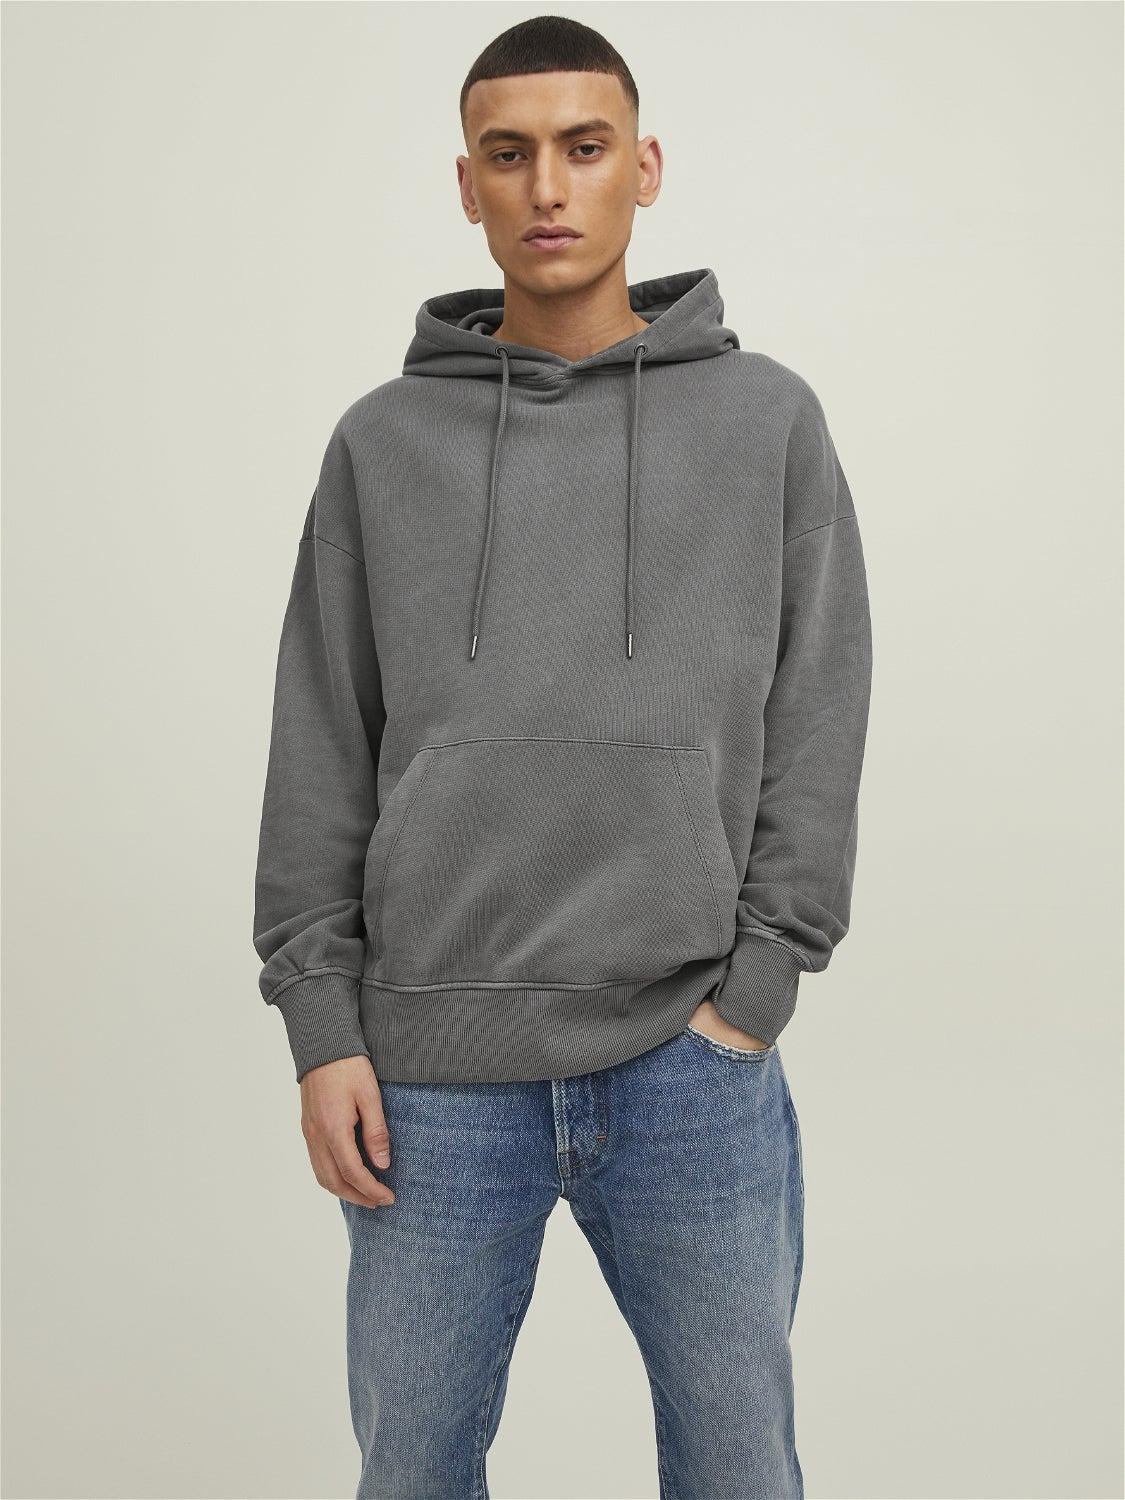 Urba Boy sweatshirt Rabatt 66 % HERREN Pullovers & Sweatshirts Mit Reißverschluss Grau XXL 